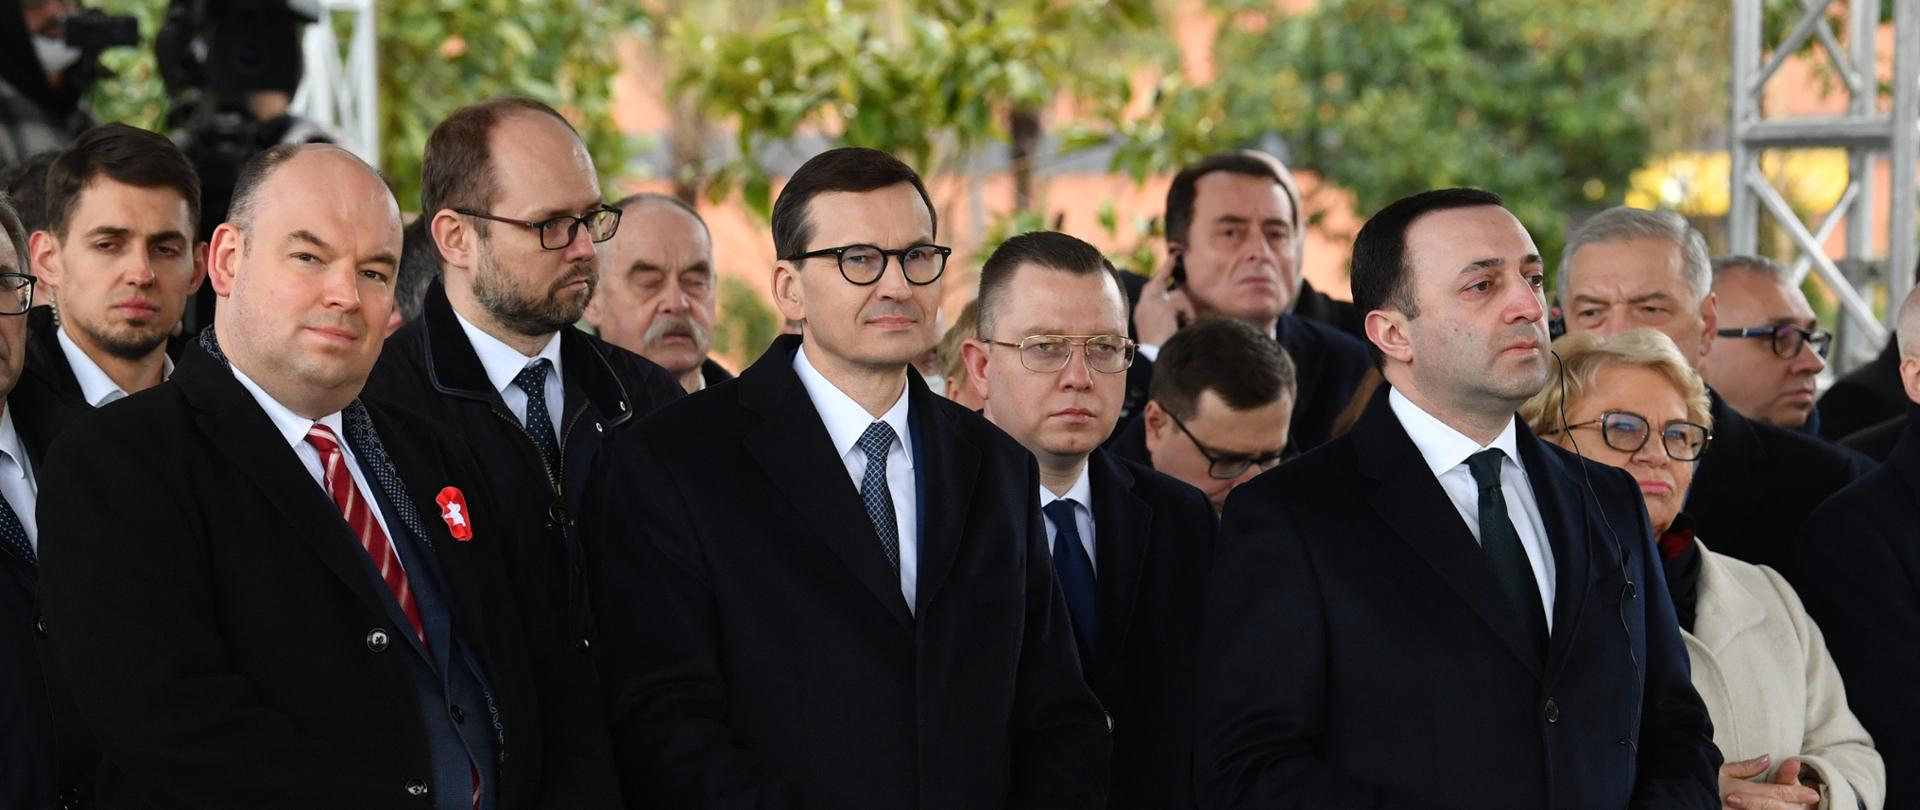 Delegacje rządowe Polski i Gruzji podczas uroczystości odsłonięcia pomnika Prezydenta Lecha Kaczyńskiego w Batumi, Gruzja.